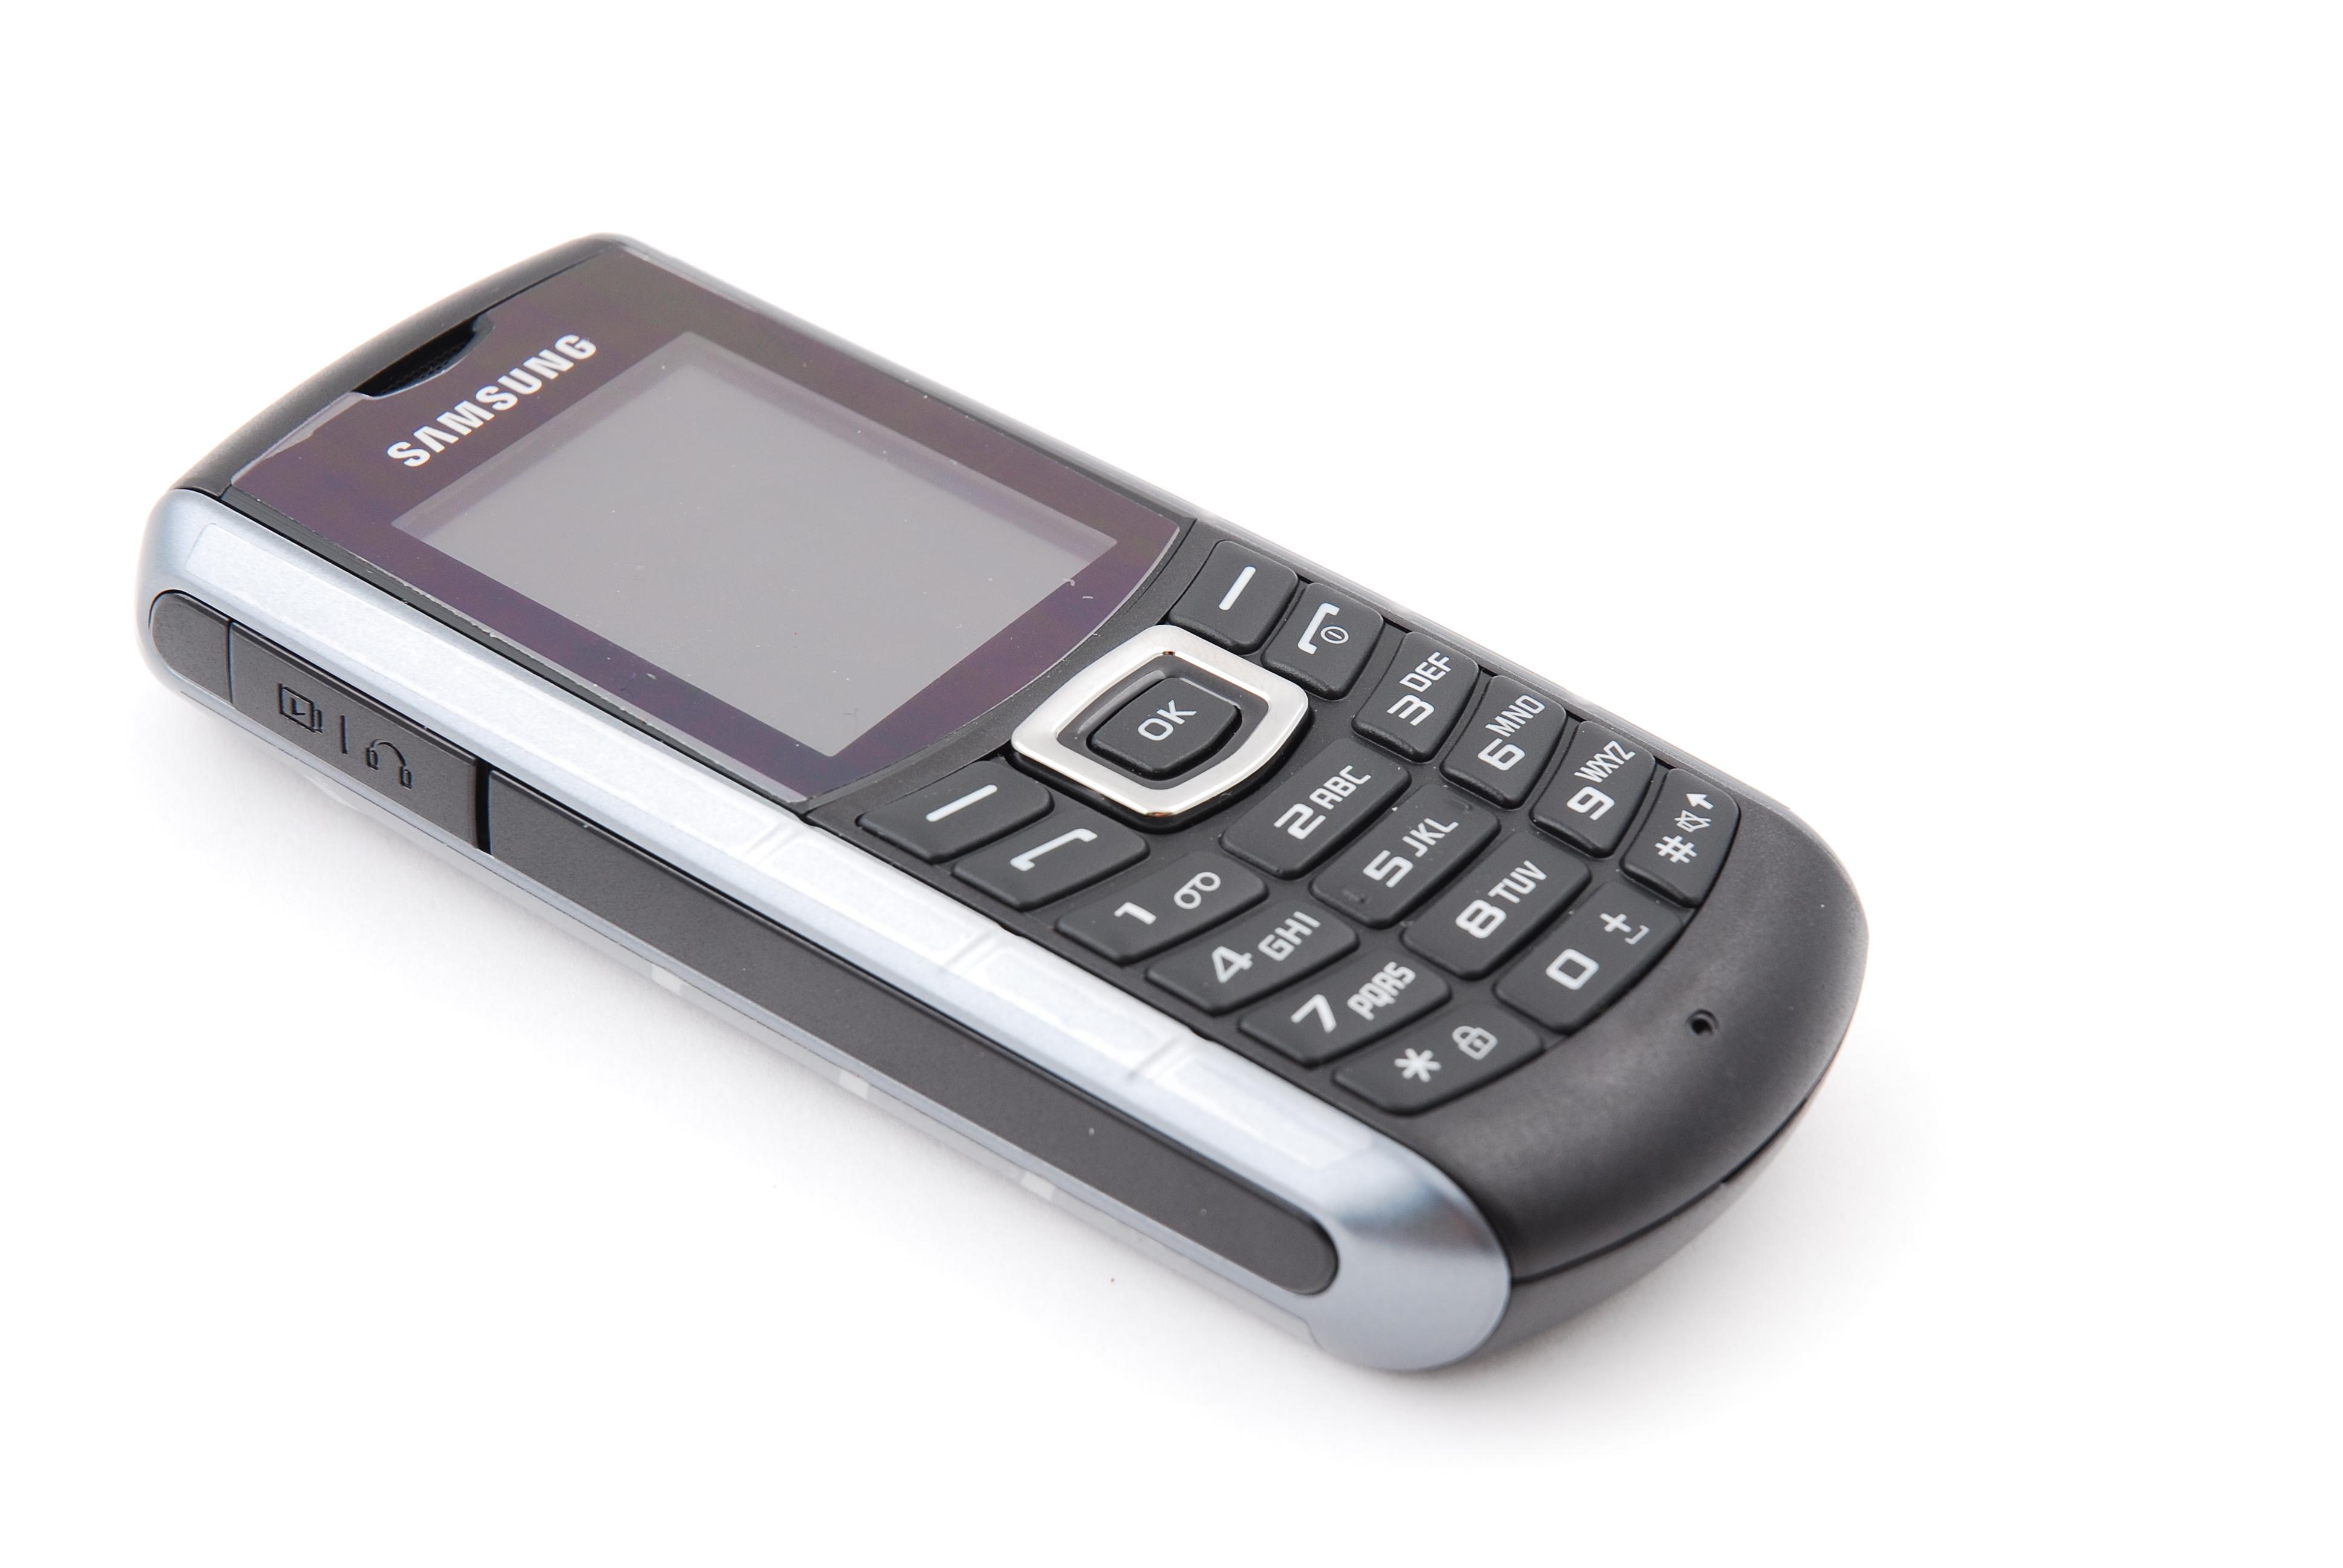 Samsung E2370 Xcover har ikke like ekstremt utseende som Sonims modeller.